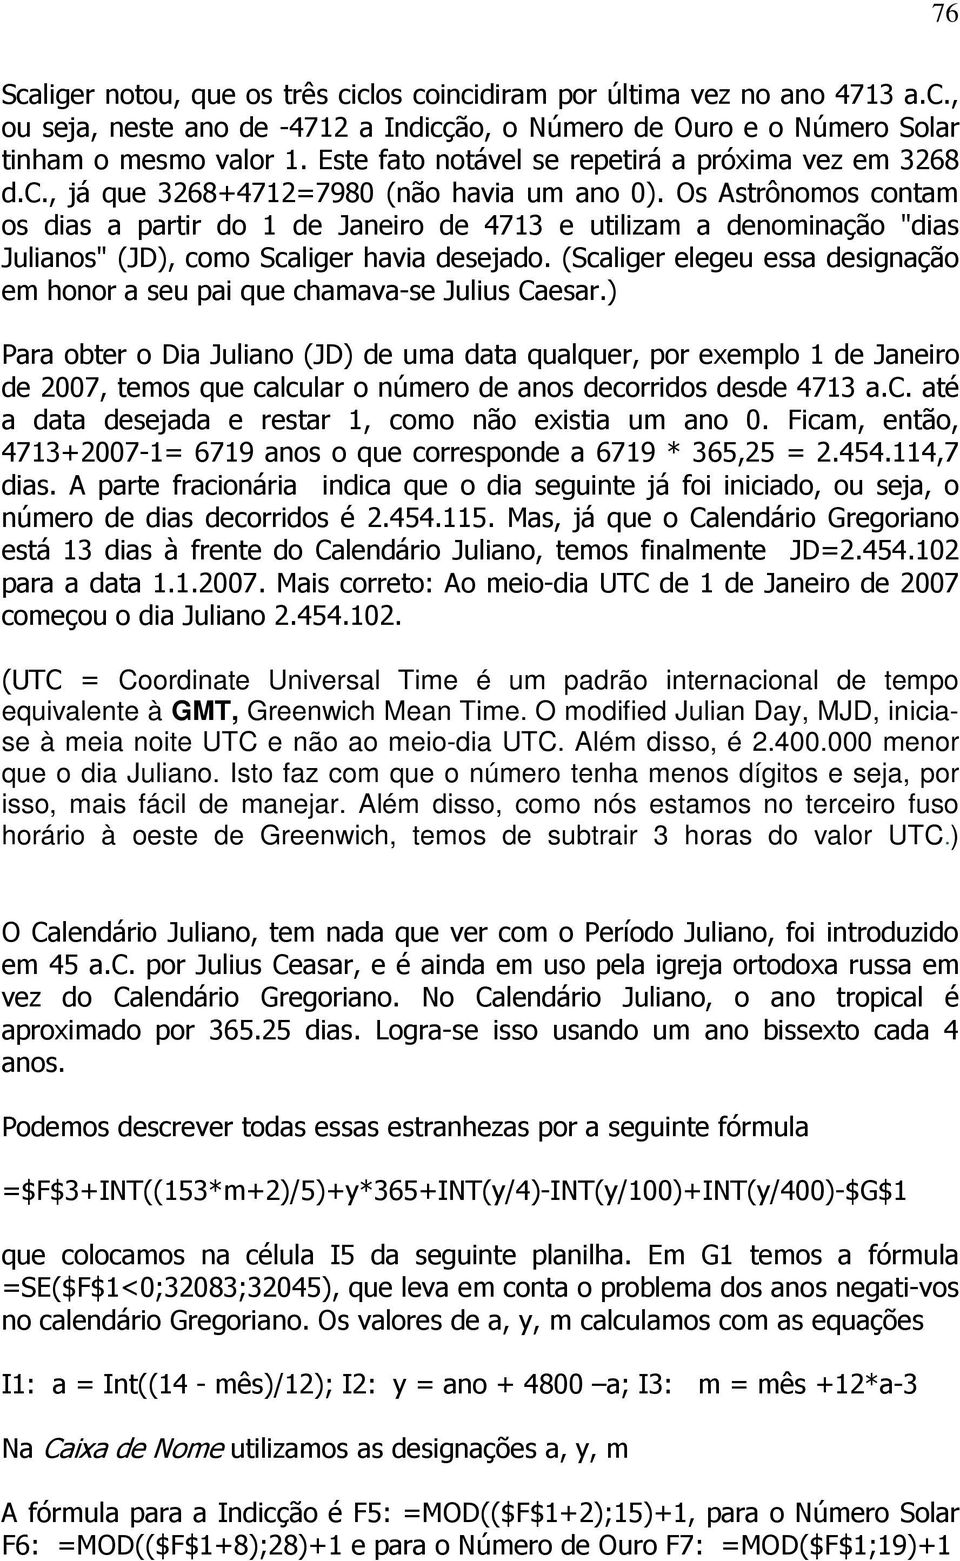 Os Astrônomos contam os dias a partir do 1 de Janeiro de 4713 e utilizam a denominação "dias Julianos" (JD), como Scaliger havia desejado.